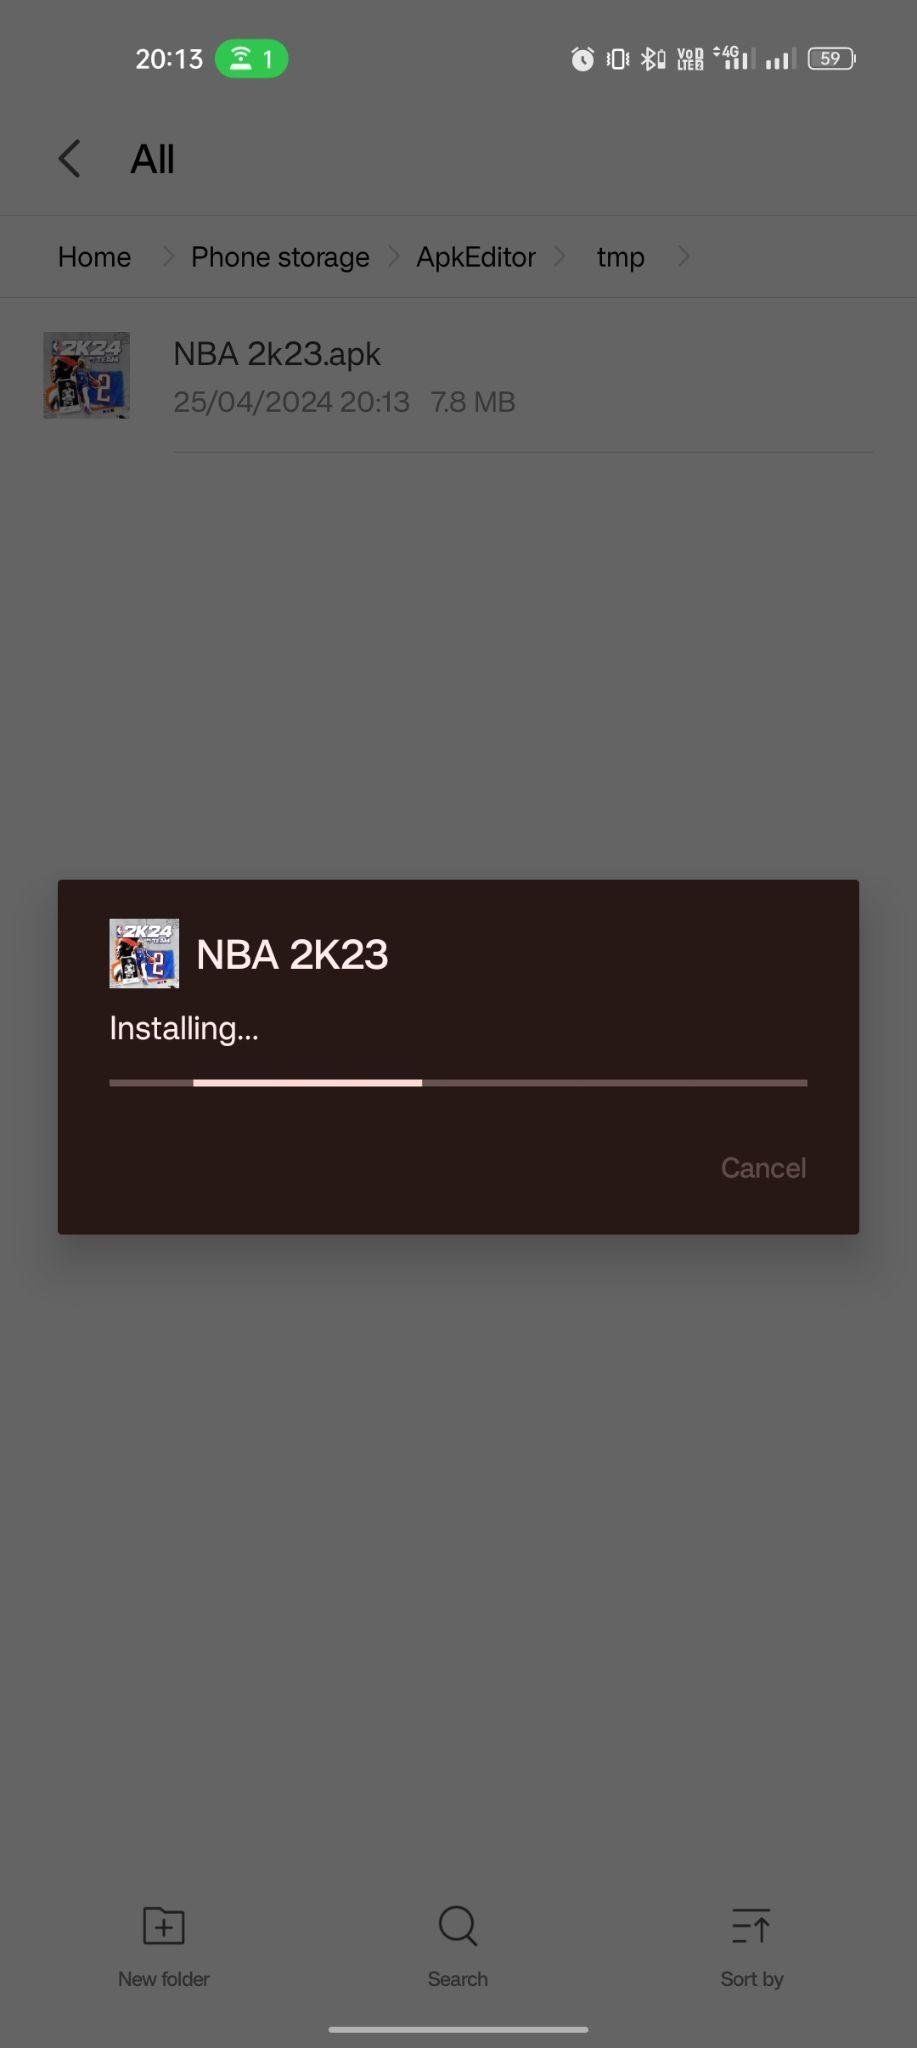 NBA 2K23 apk installing